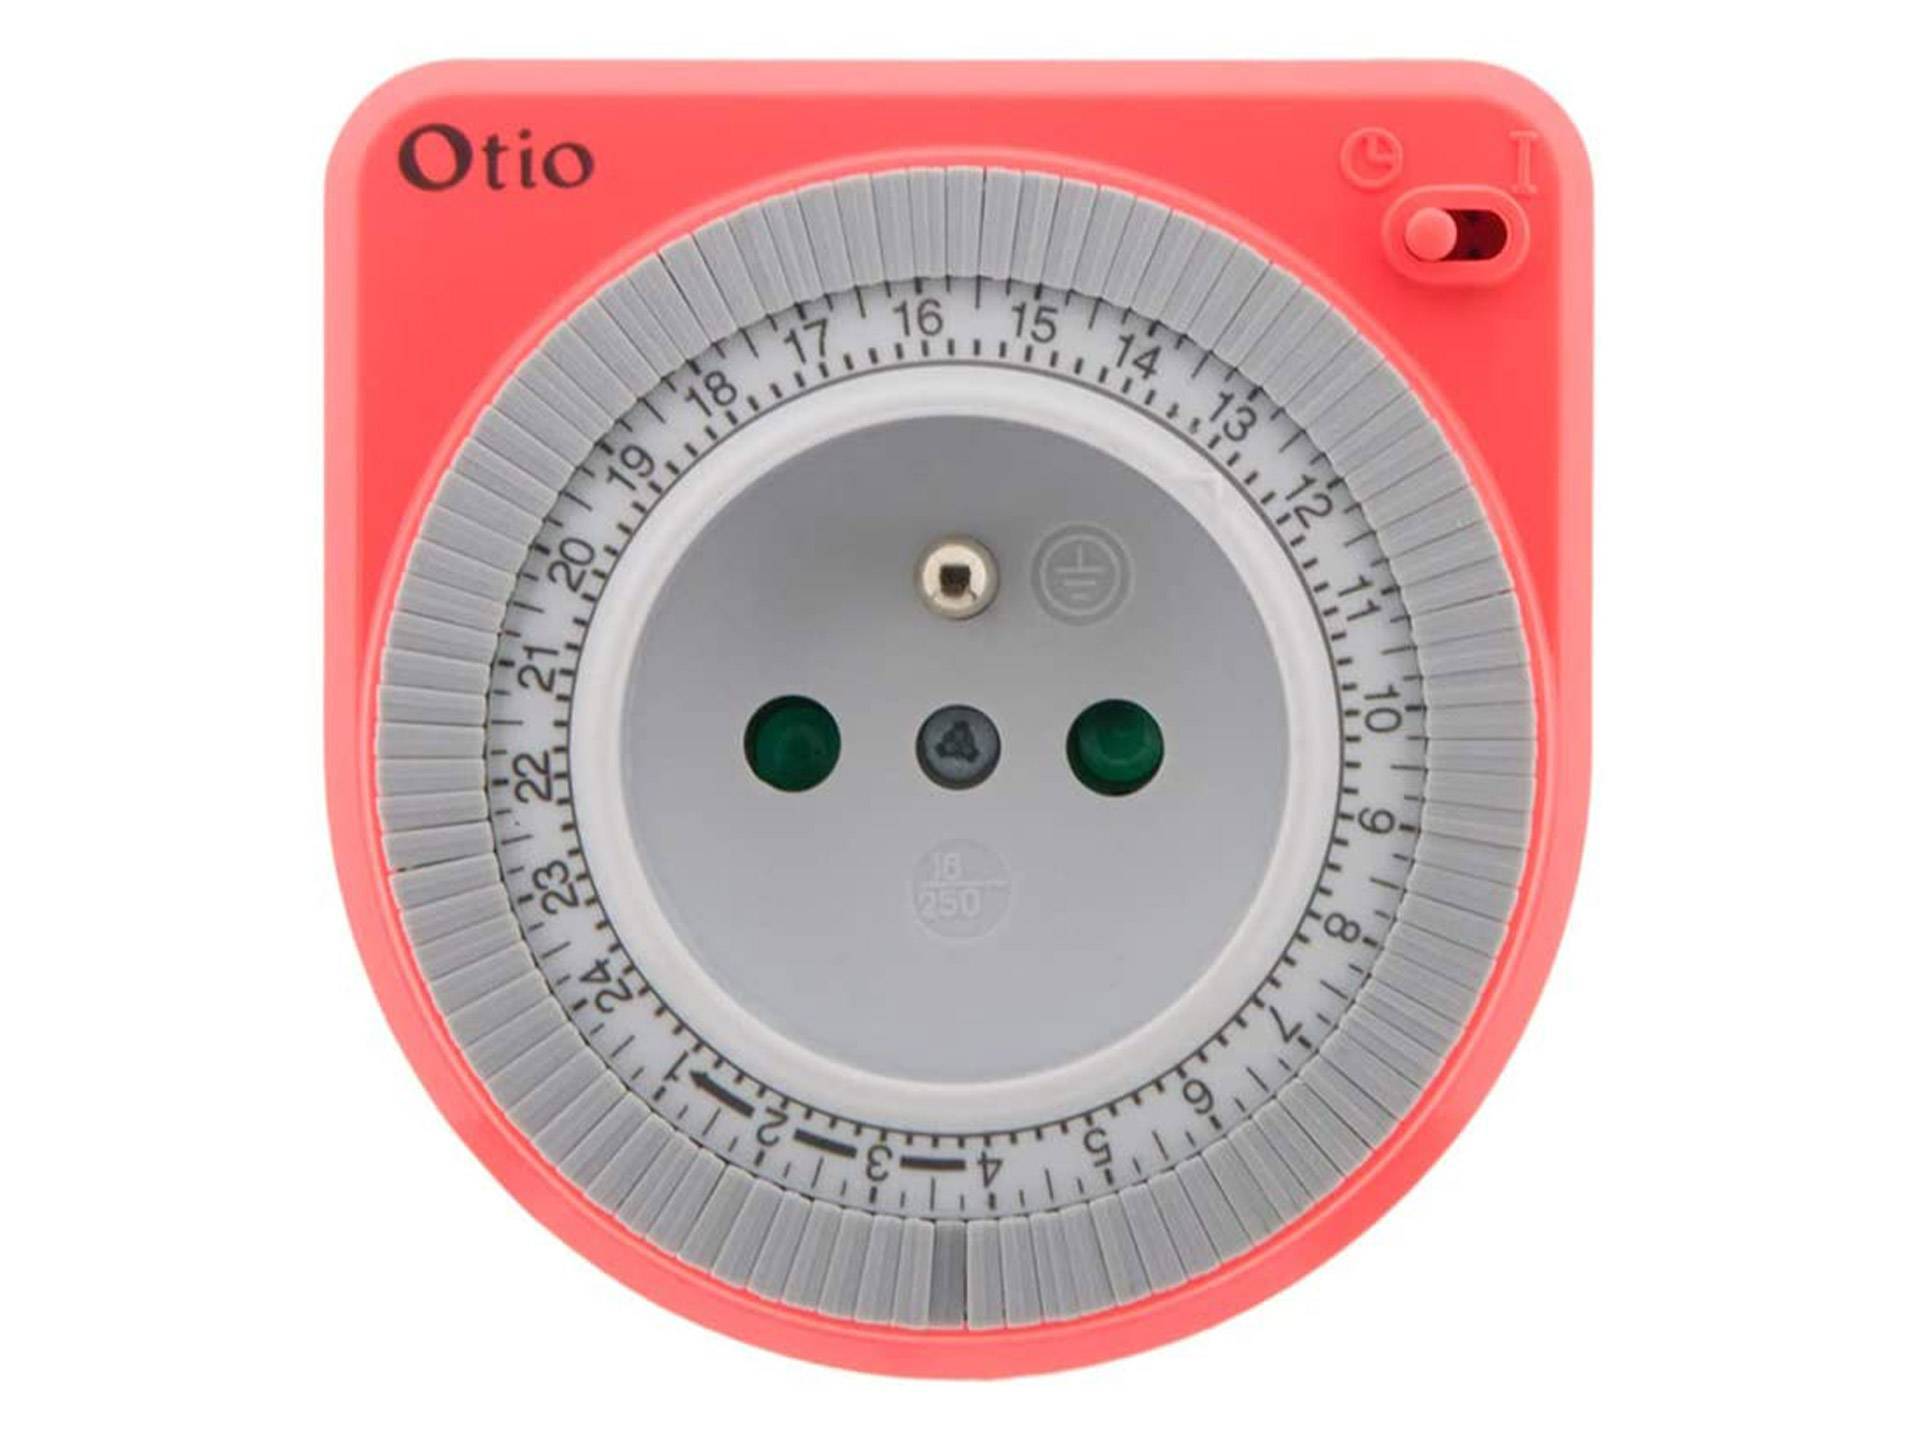 Prise avec minuterie de coupure automatique rose Otio sixième